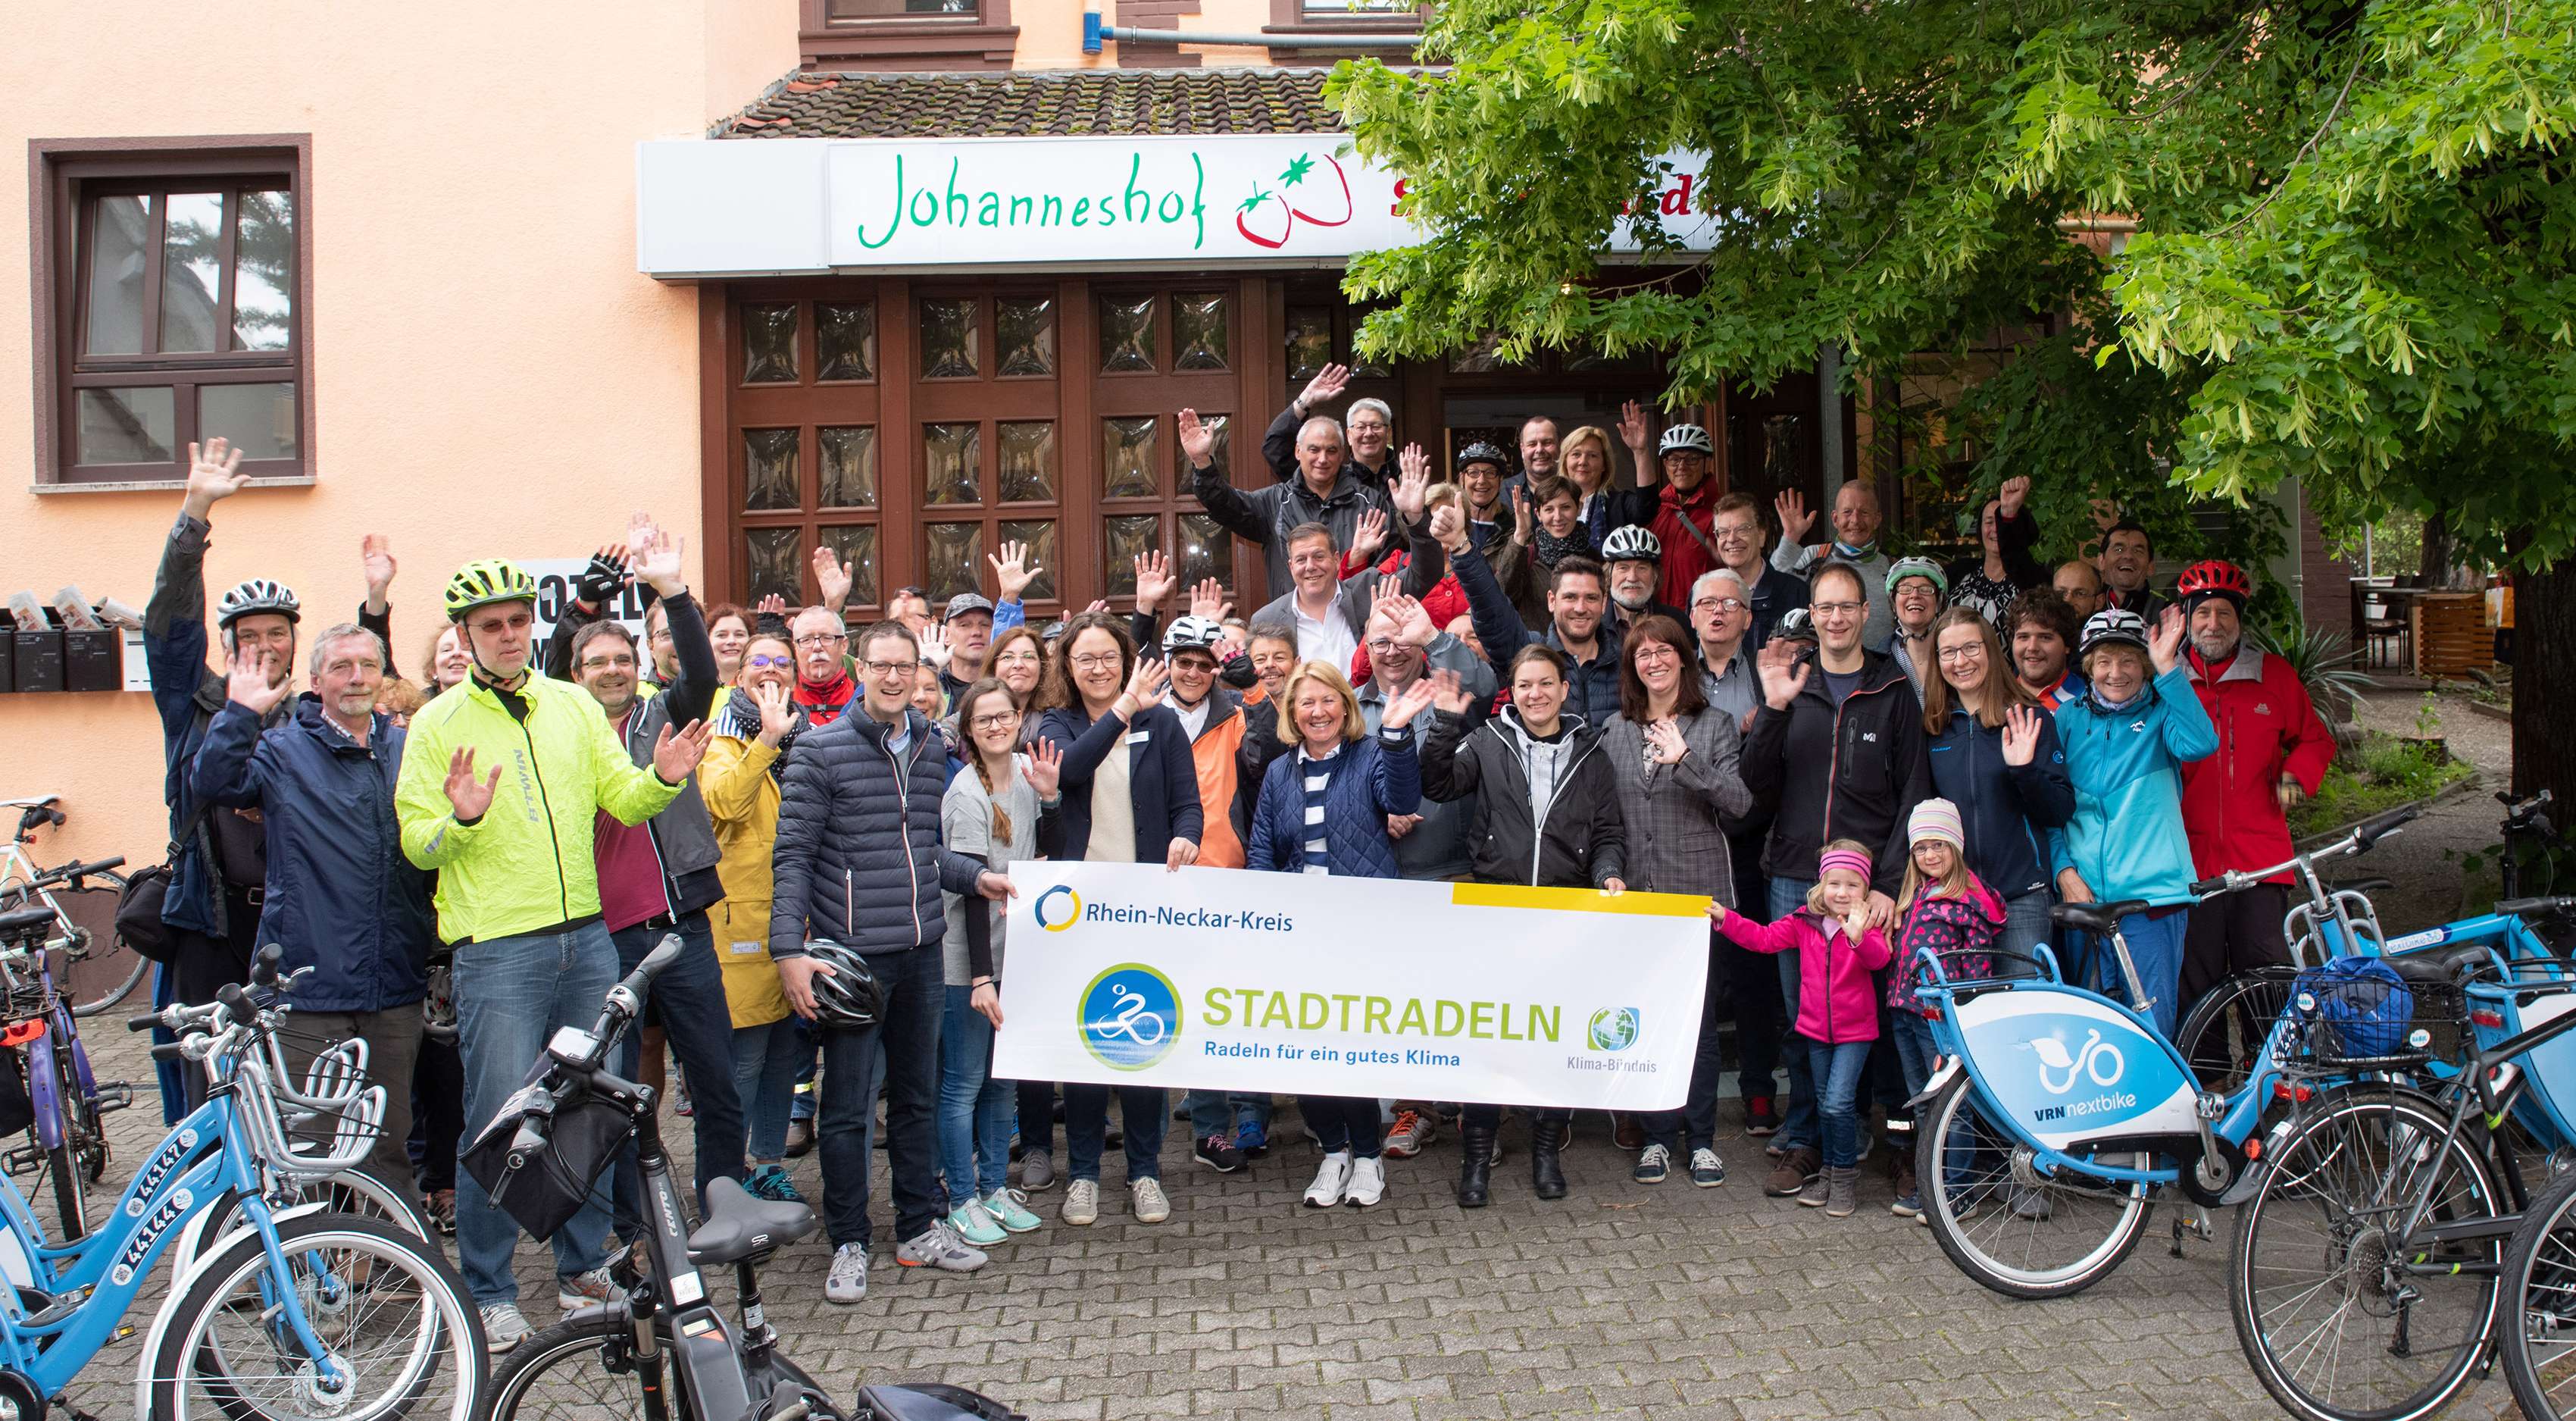  Der Rhein-Neckar-Kreis ist stolz auf seine 5.987 Stadtradlerinnen und Stadtradler: 1.079.269 Radkilometer und 456 Teams radelten fast 27-mal um den Äquator (Foto: Landratsamt Rhein-Neckar-Kreis) 